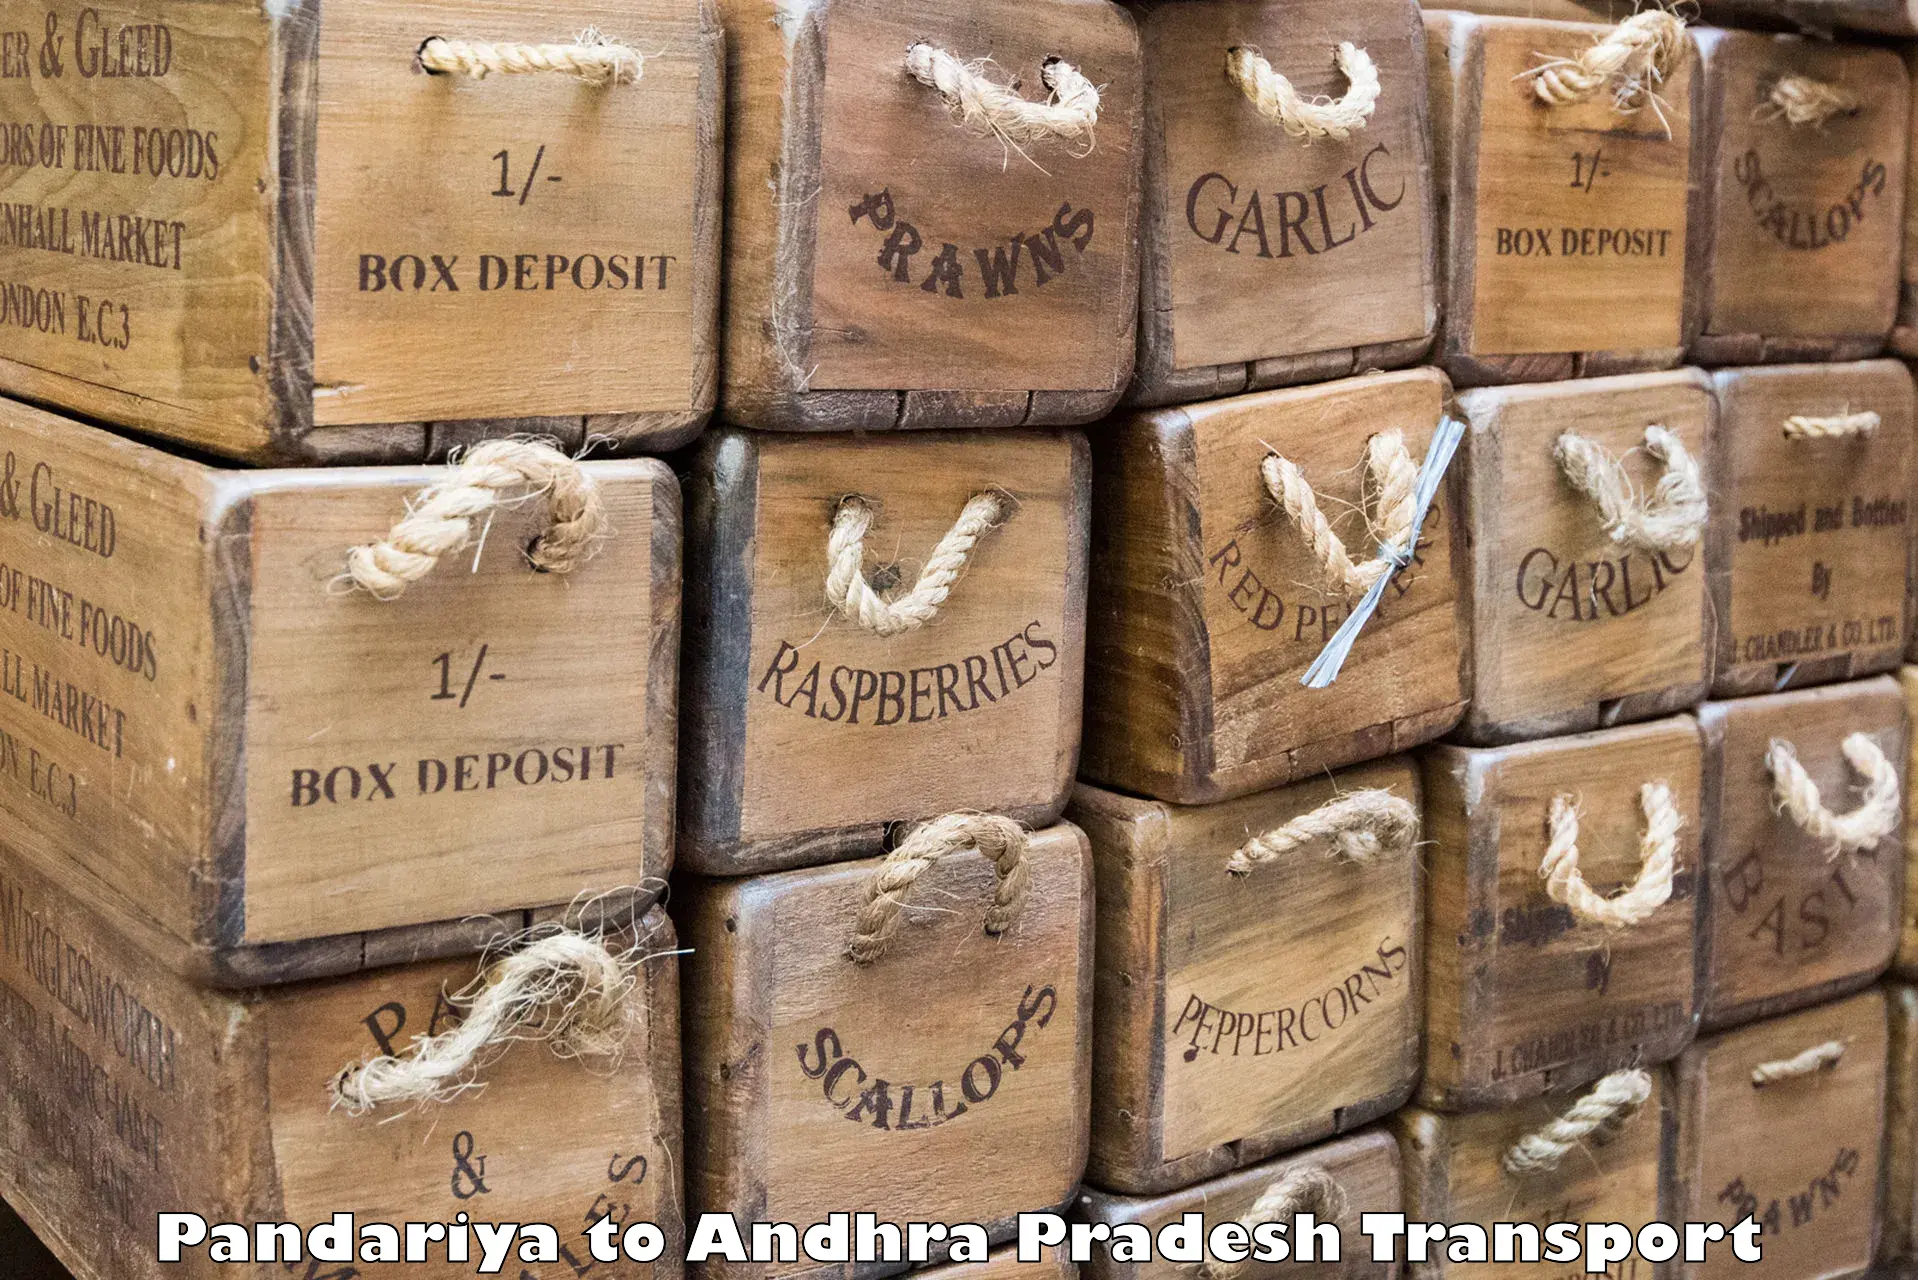 Container transportation services Pandariya to Vijayawada